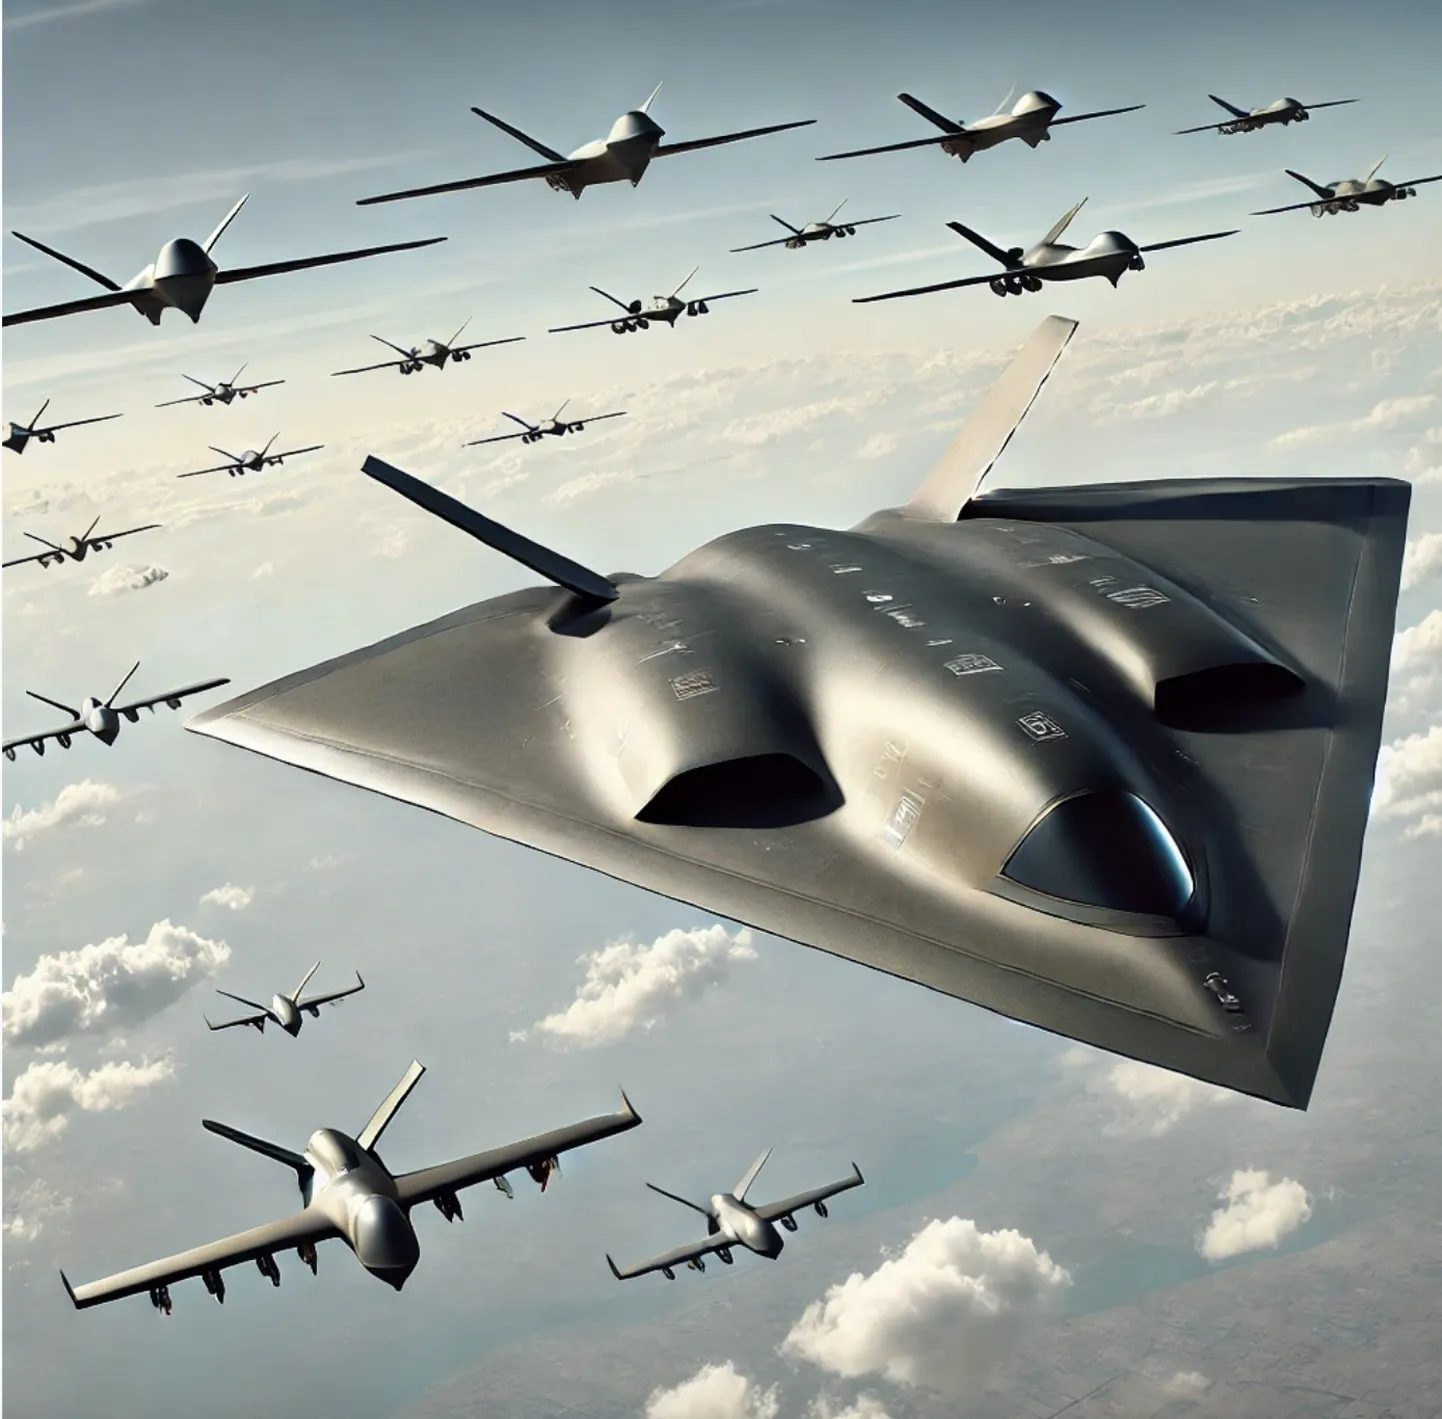 Hiina katsetas uuendusliku disainiga sõjalennukit, millel on droonidest saatjad. Pilt on illustreeriv.